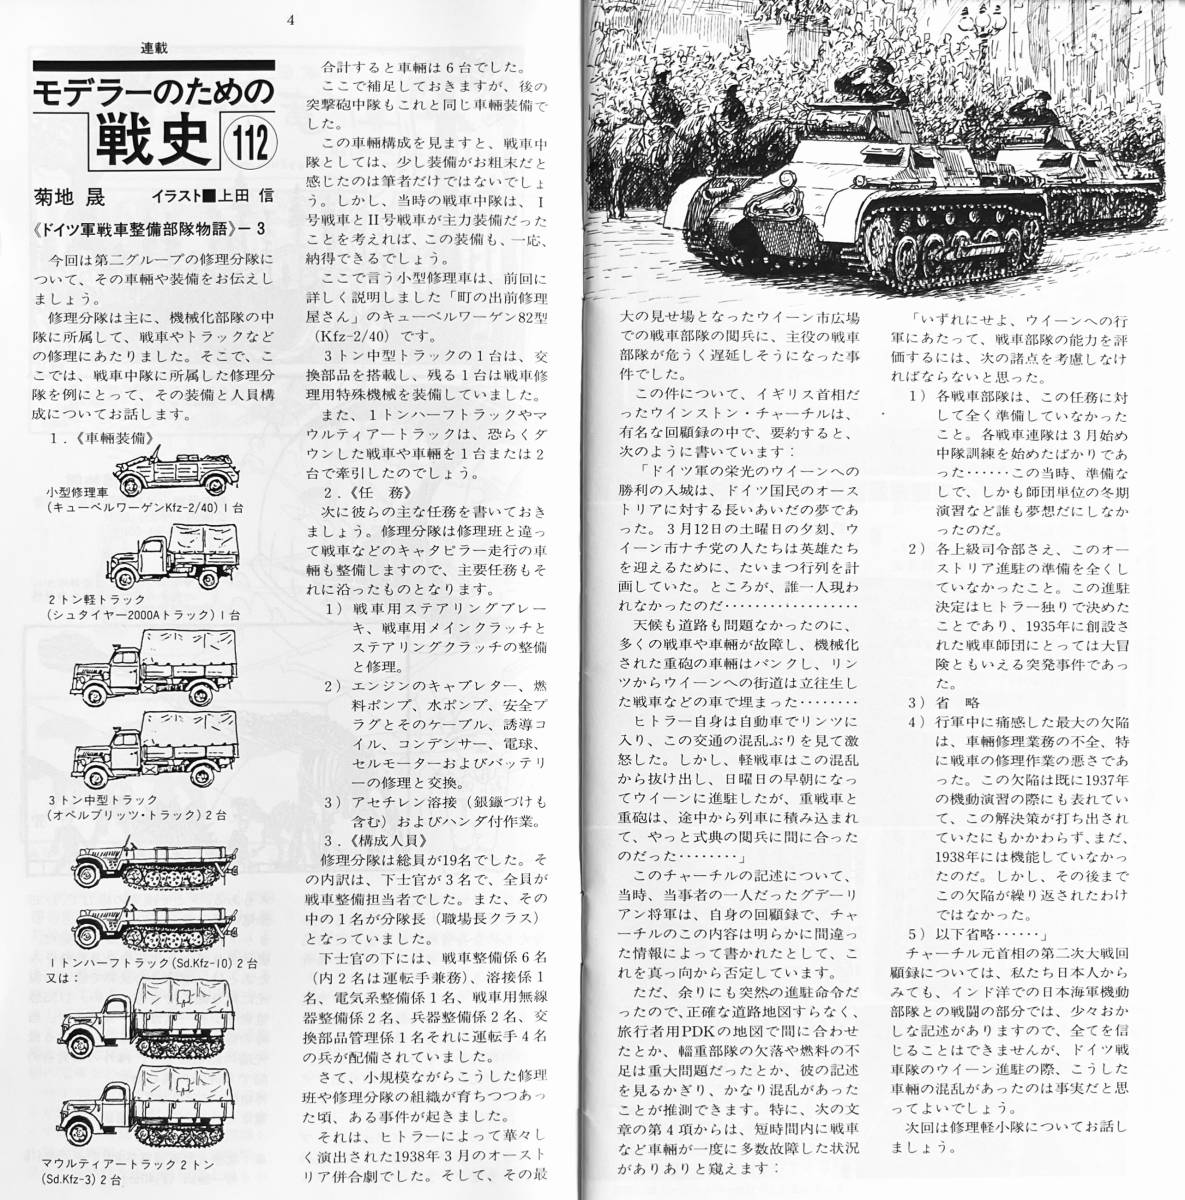 ■ 希少 タミヤニュース 2000 8月号 Vol.375 表紙:1999年ロードレース世界選手権スズキRGV250ΓロバーツJr選手のロゴマーク_画像4